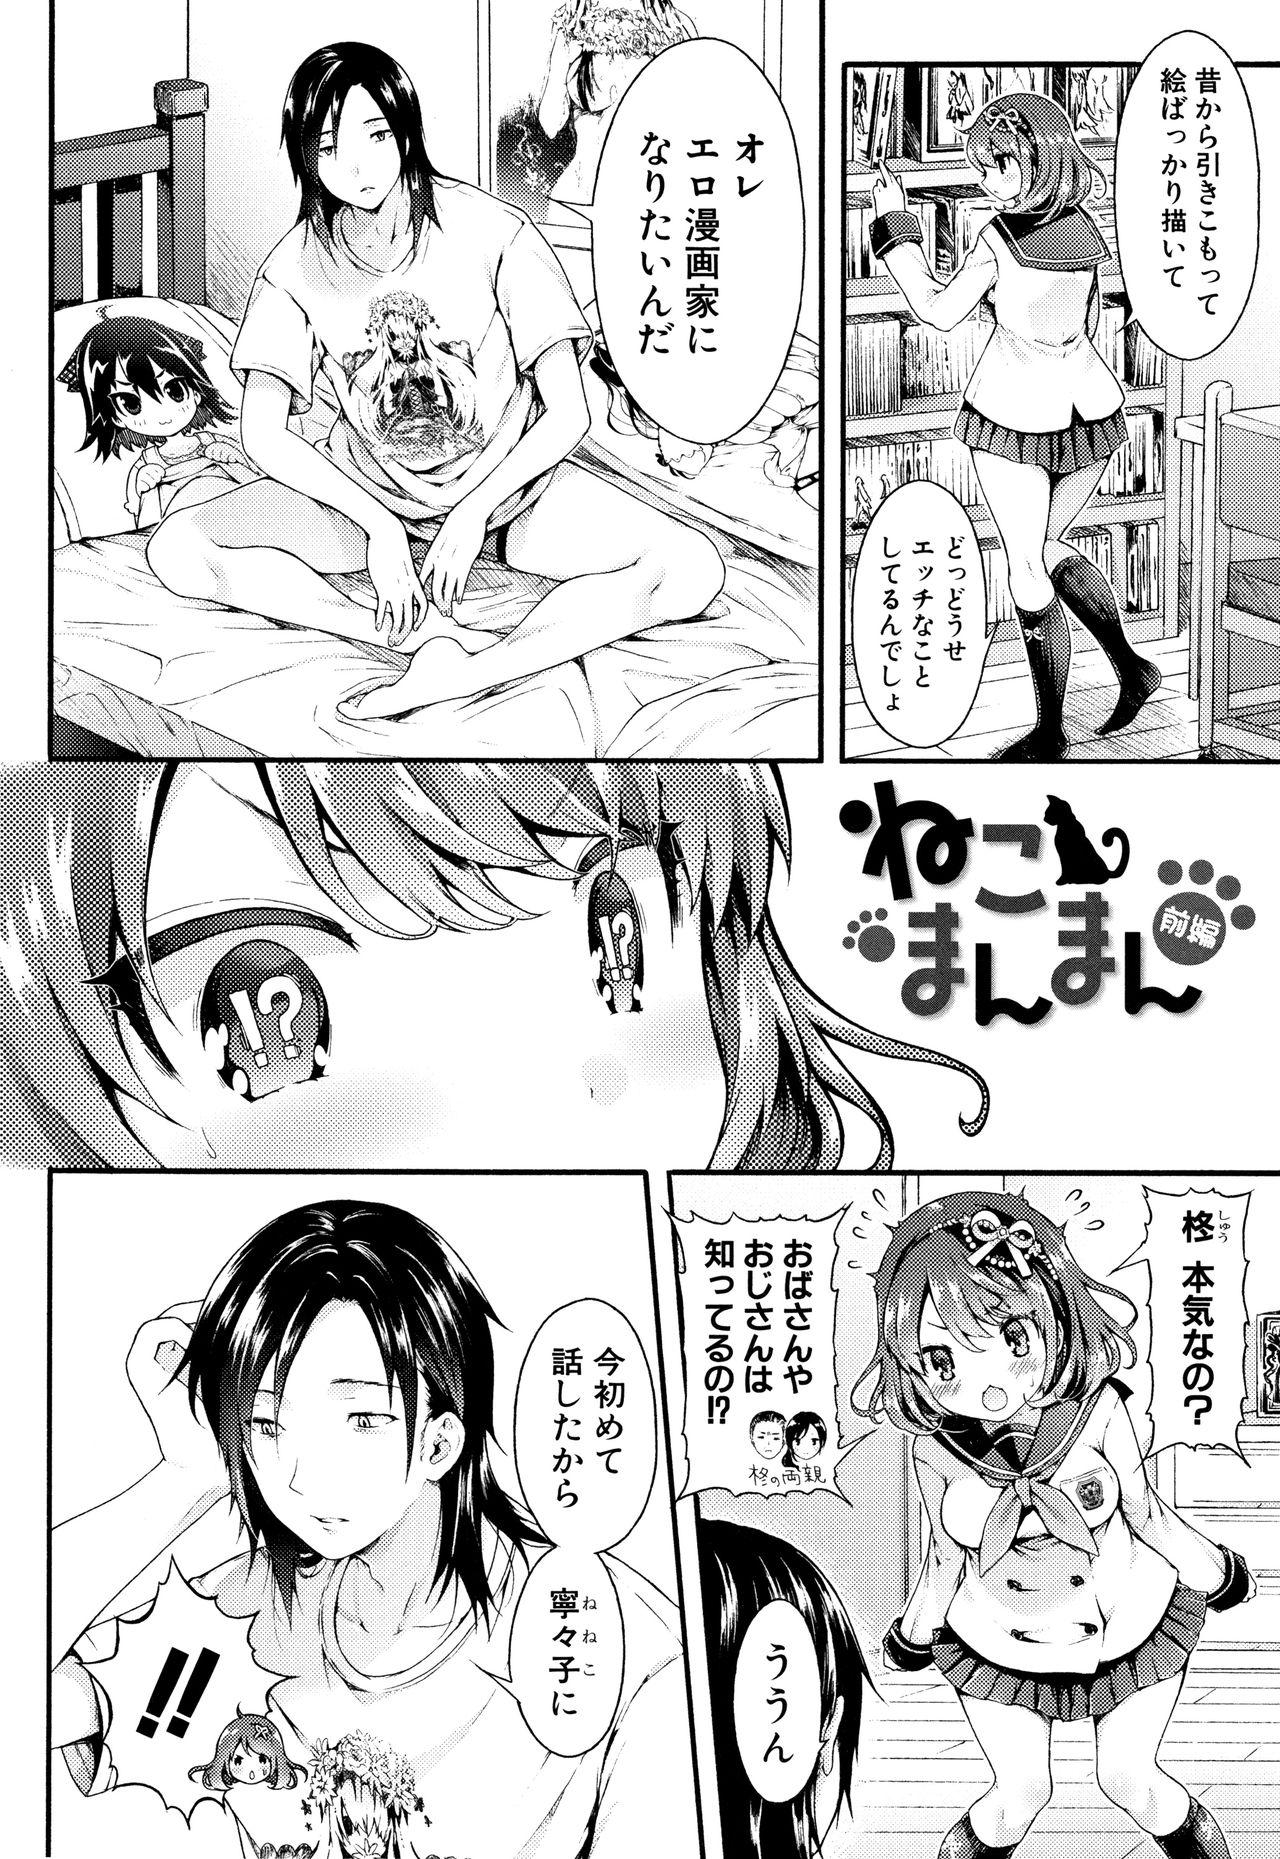 Girlsfucking Osananajimi Sotsugyoushiki Amateurs - Page 6